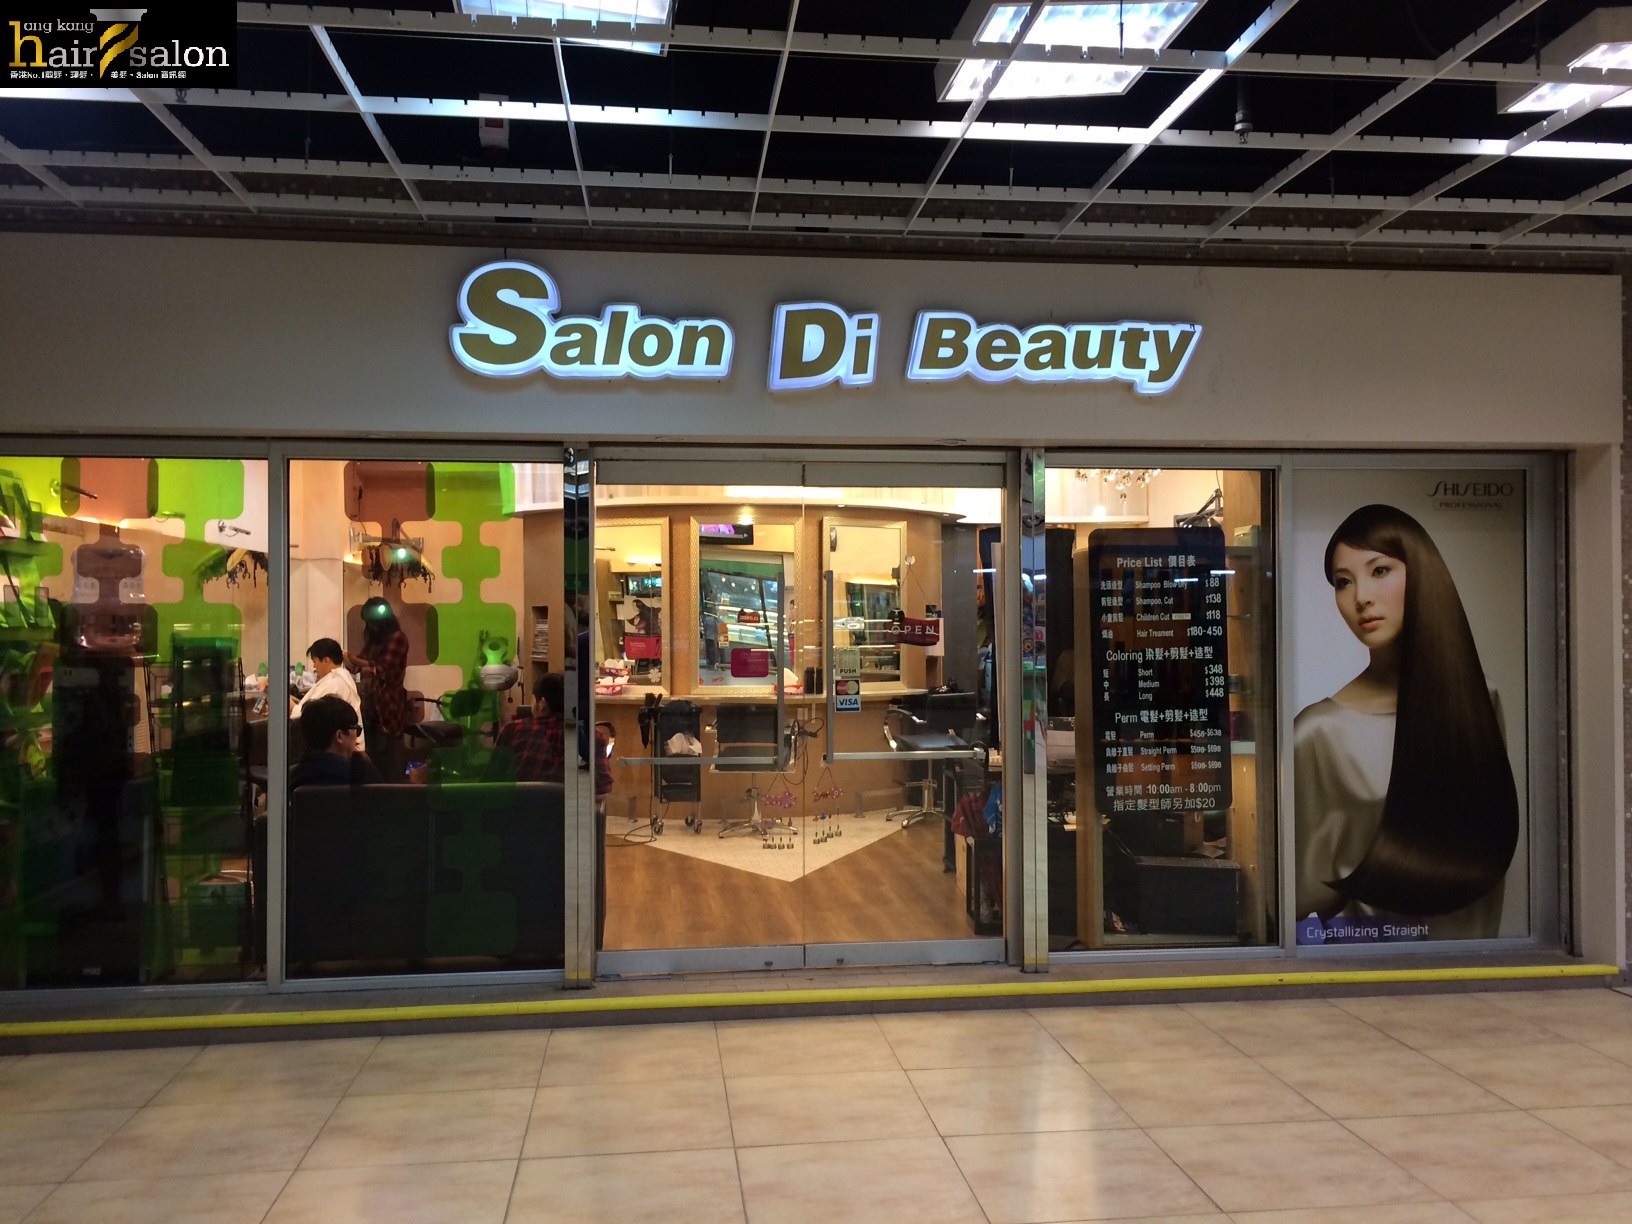 染发: Salon Di Beauty 集美軒髮廊 (龍蟠苑商場)